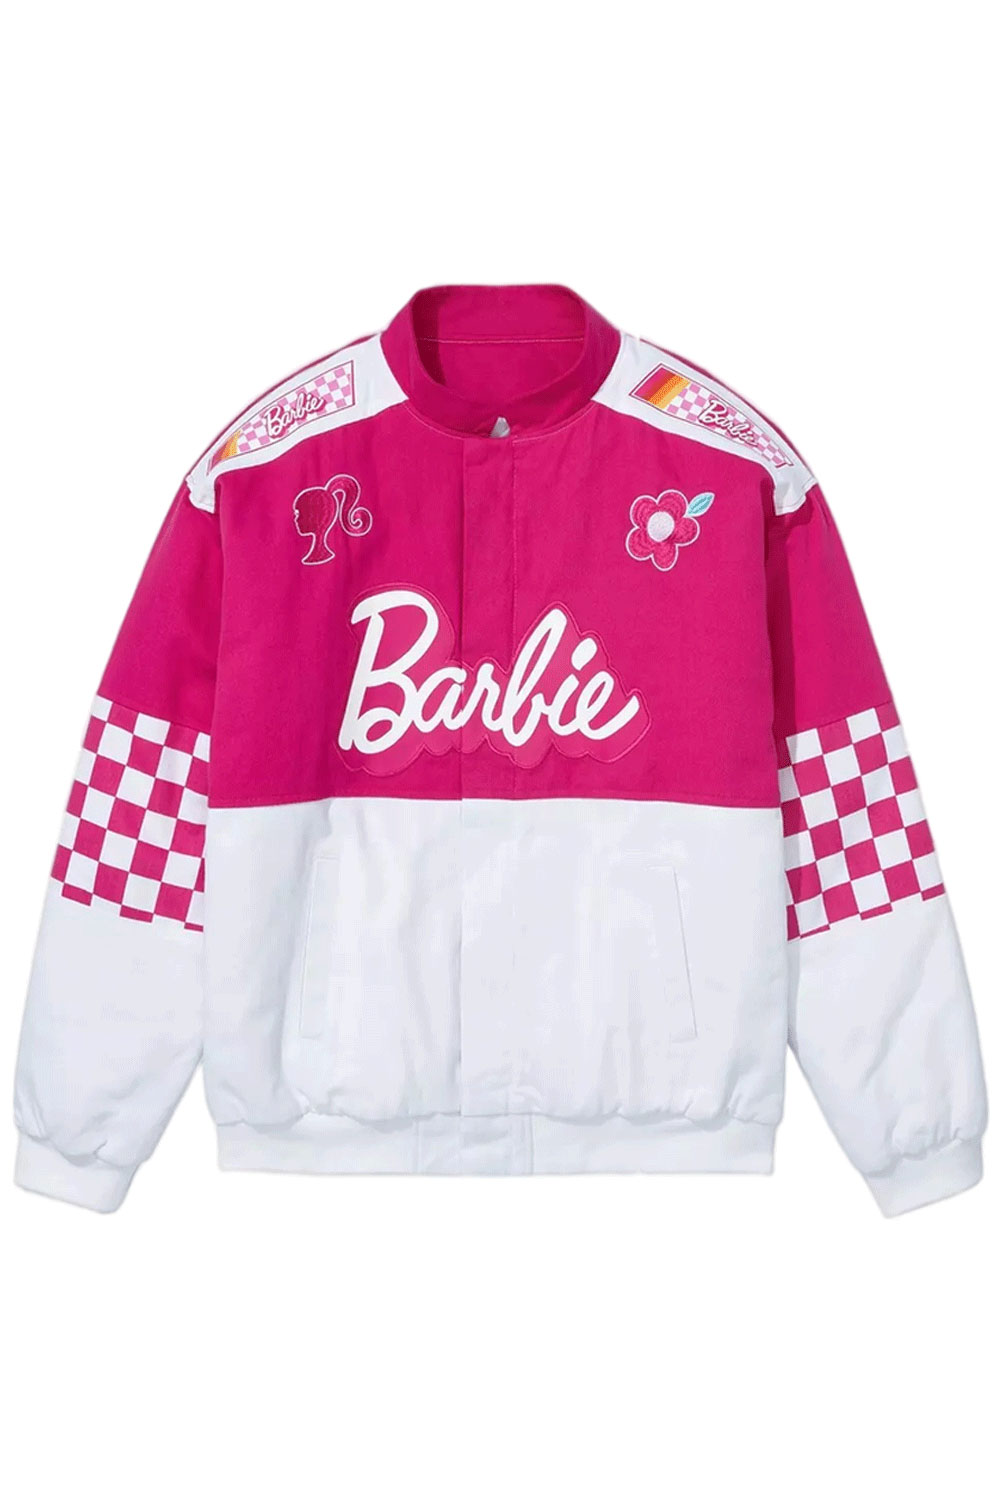 pink-barbie-racing-jacket